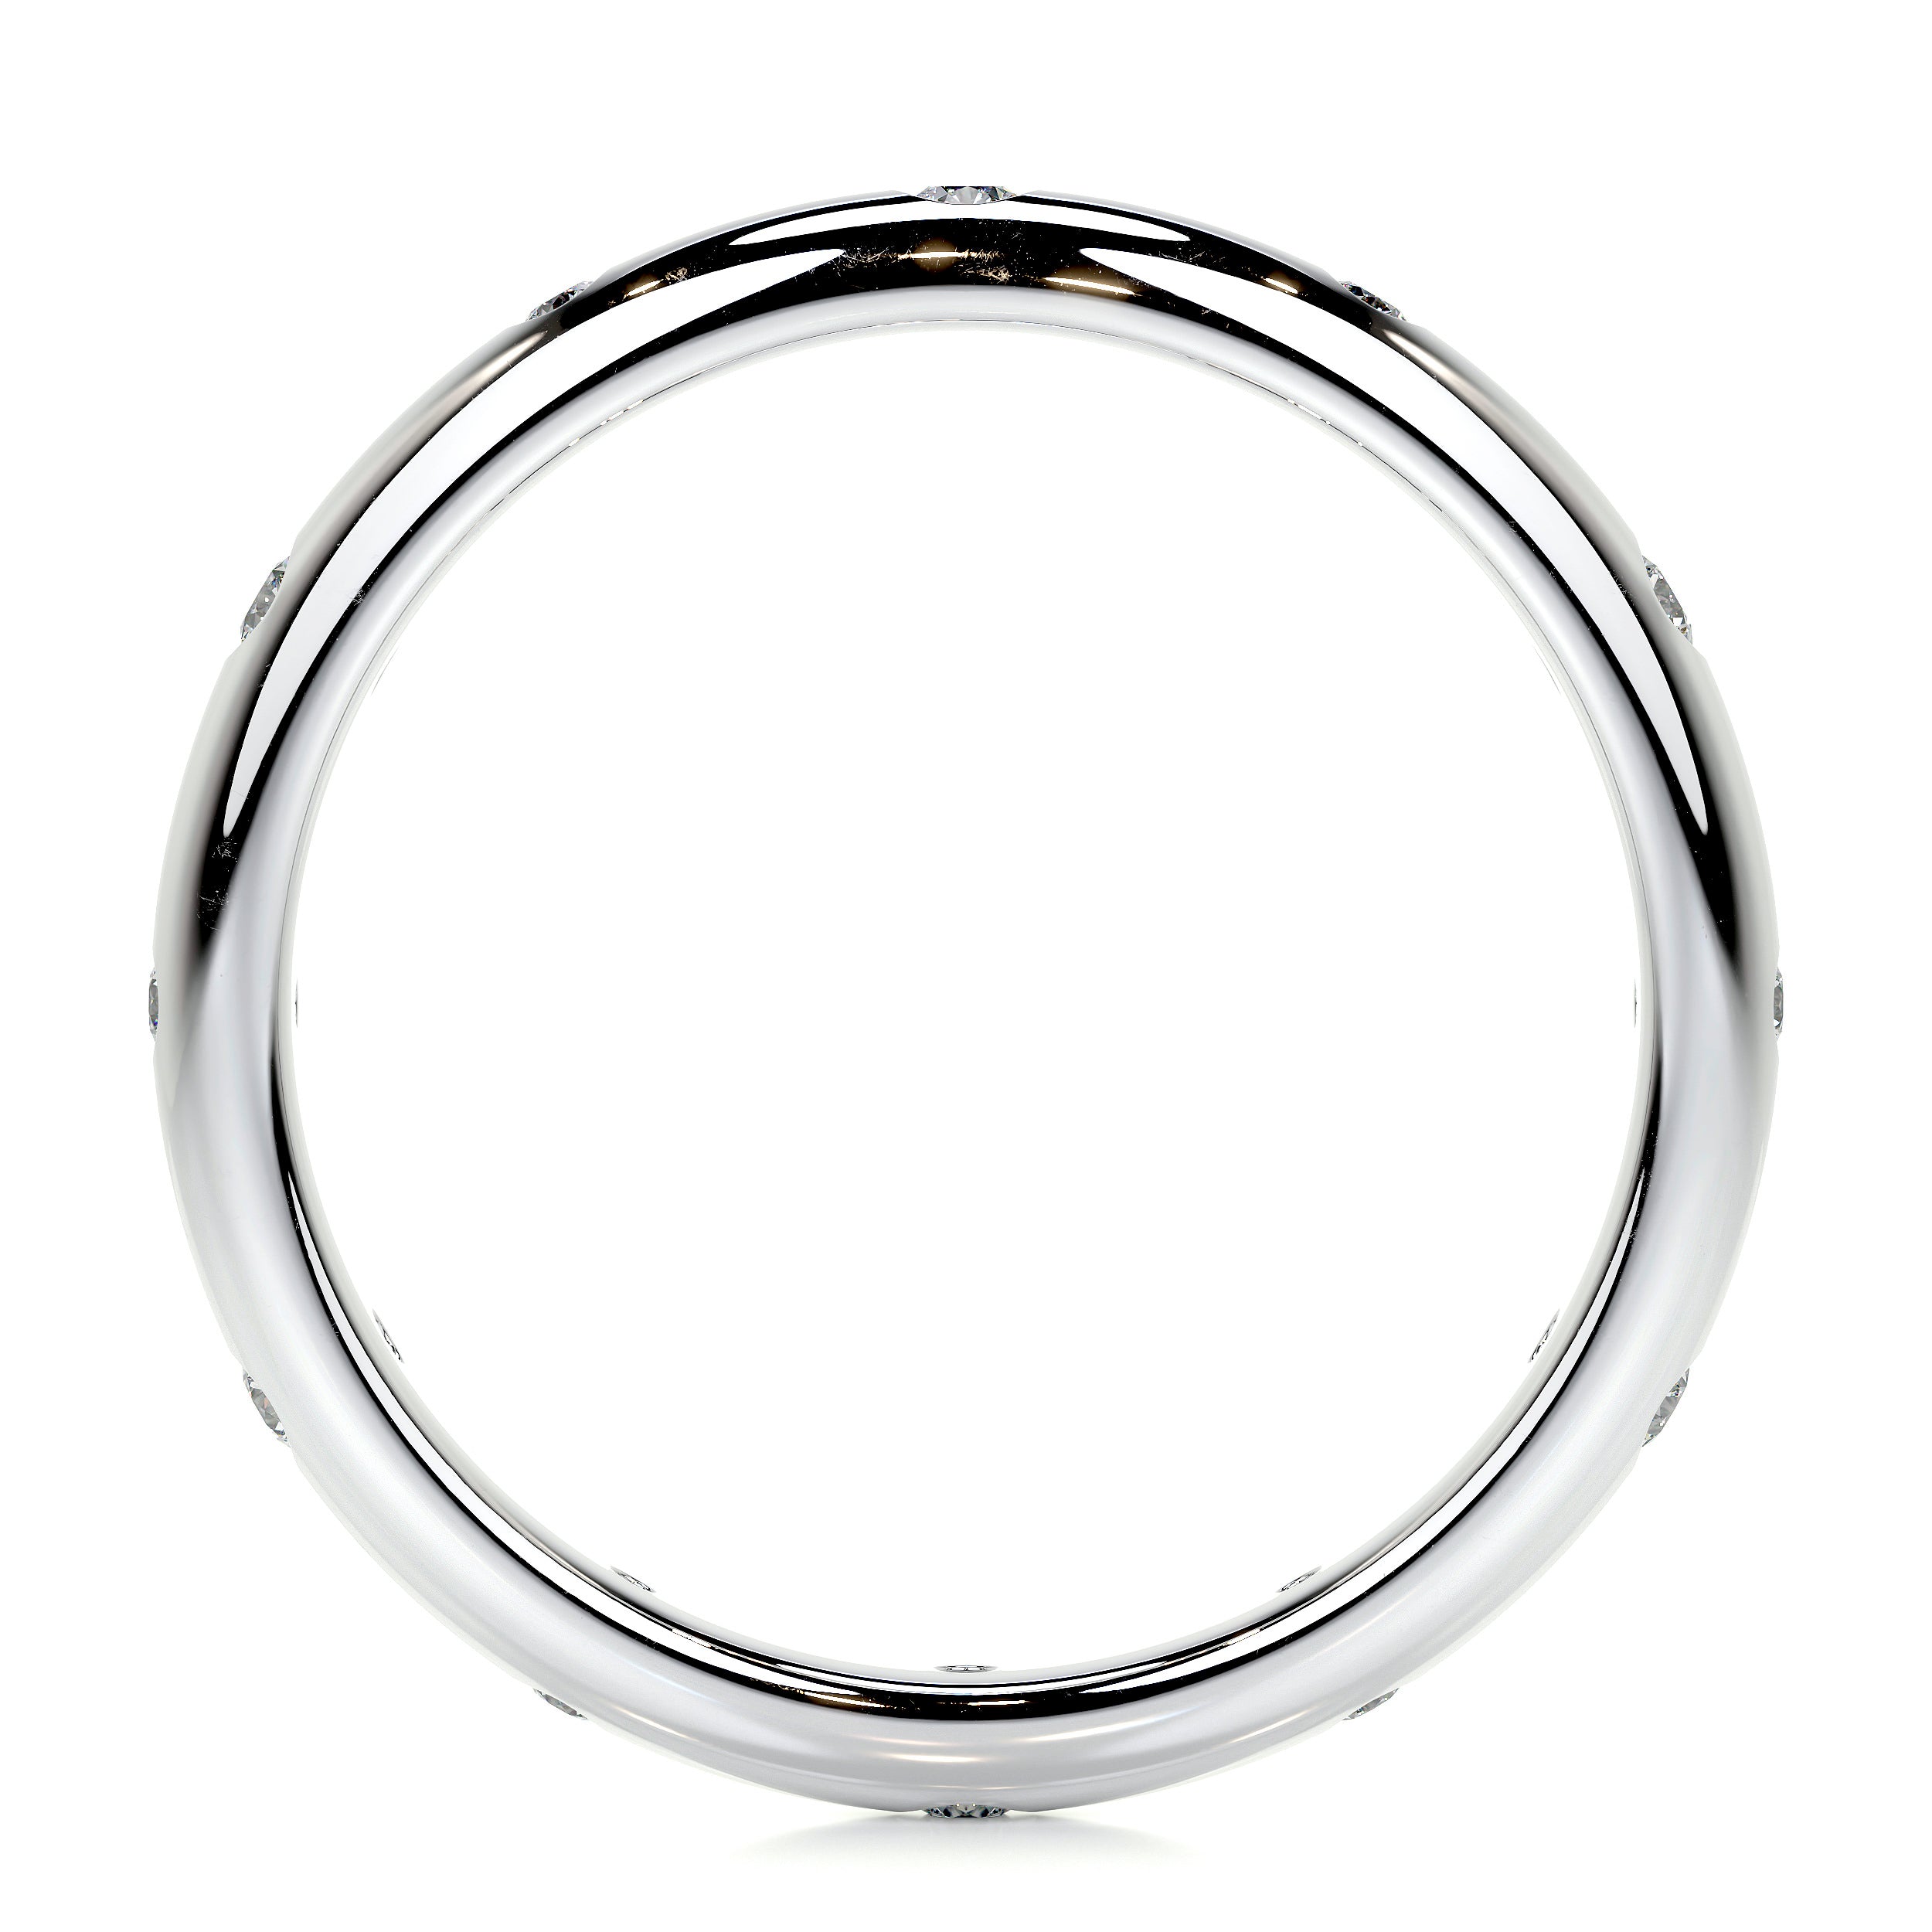 Zara Lab Grown Diamond Wedding Ring   (0.18 Carat) -18K White Gold